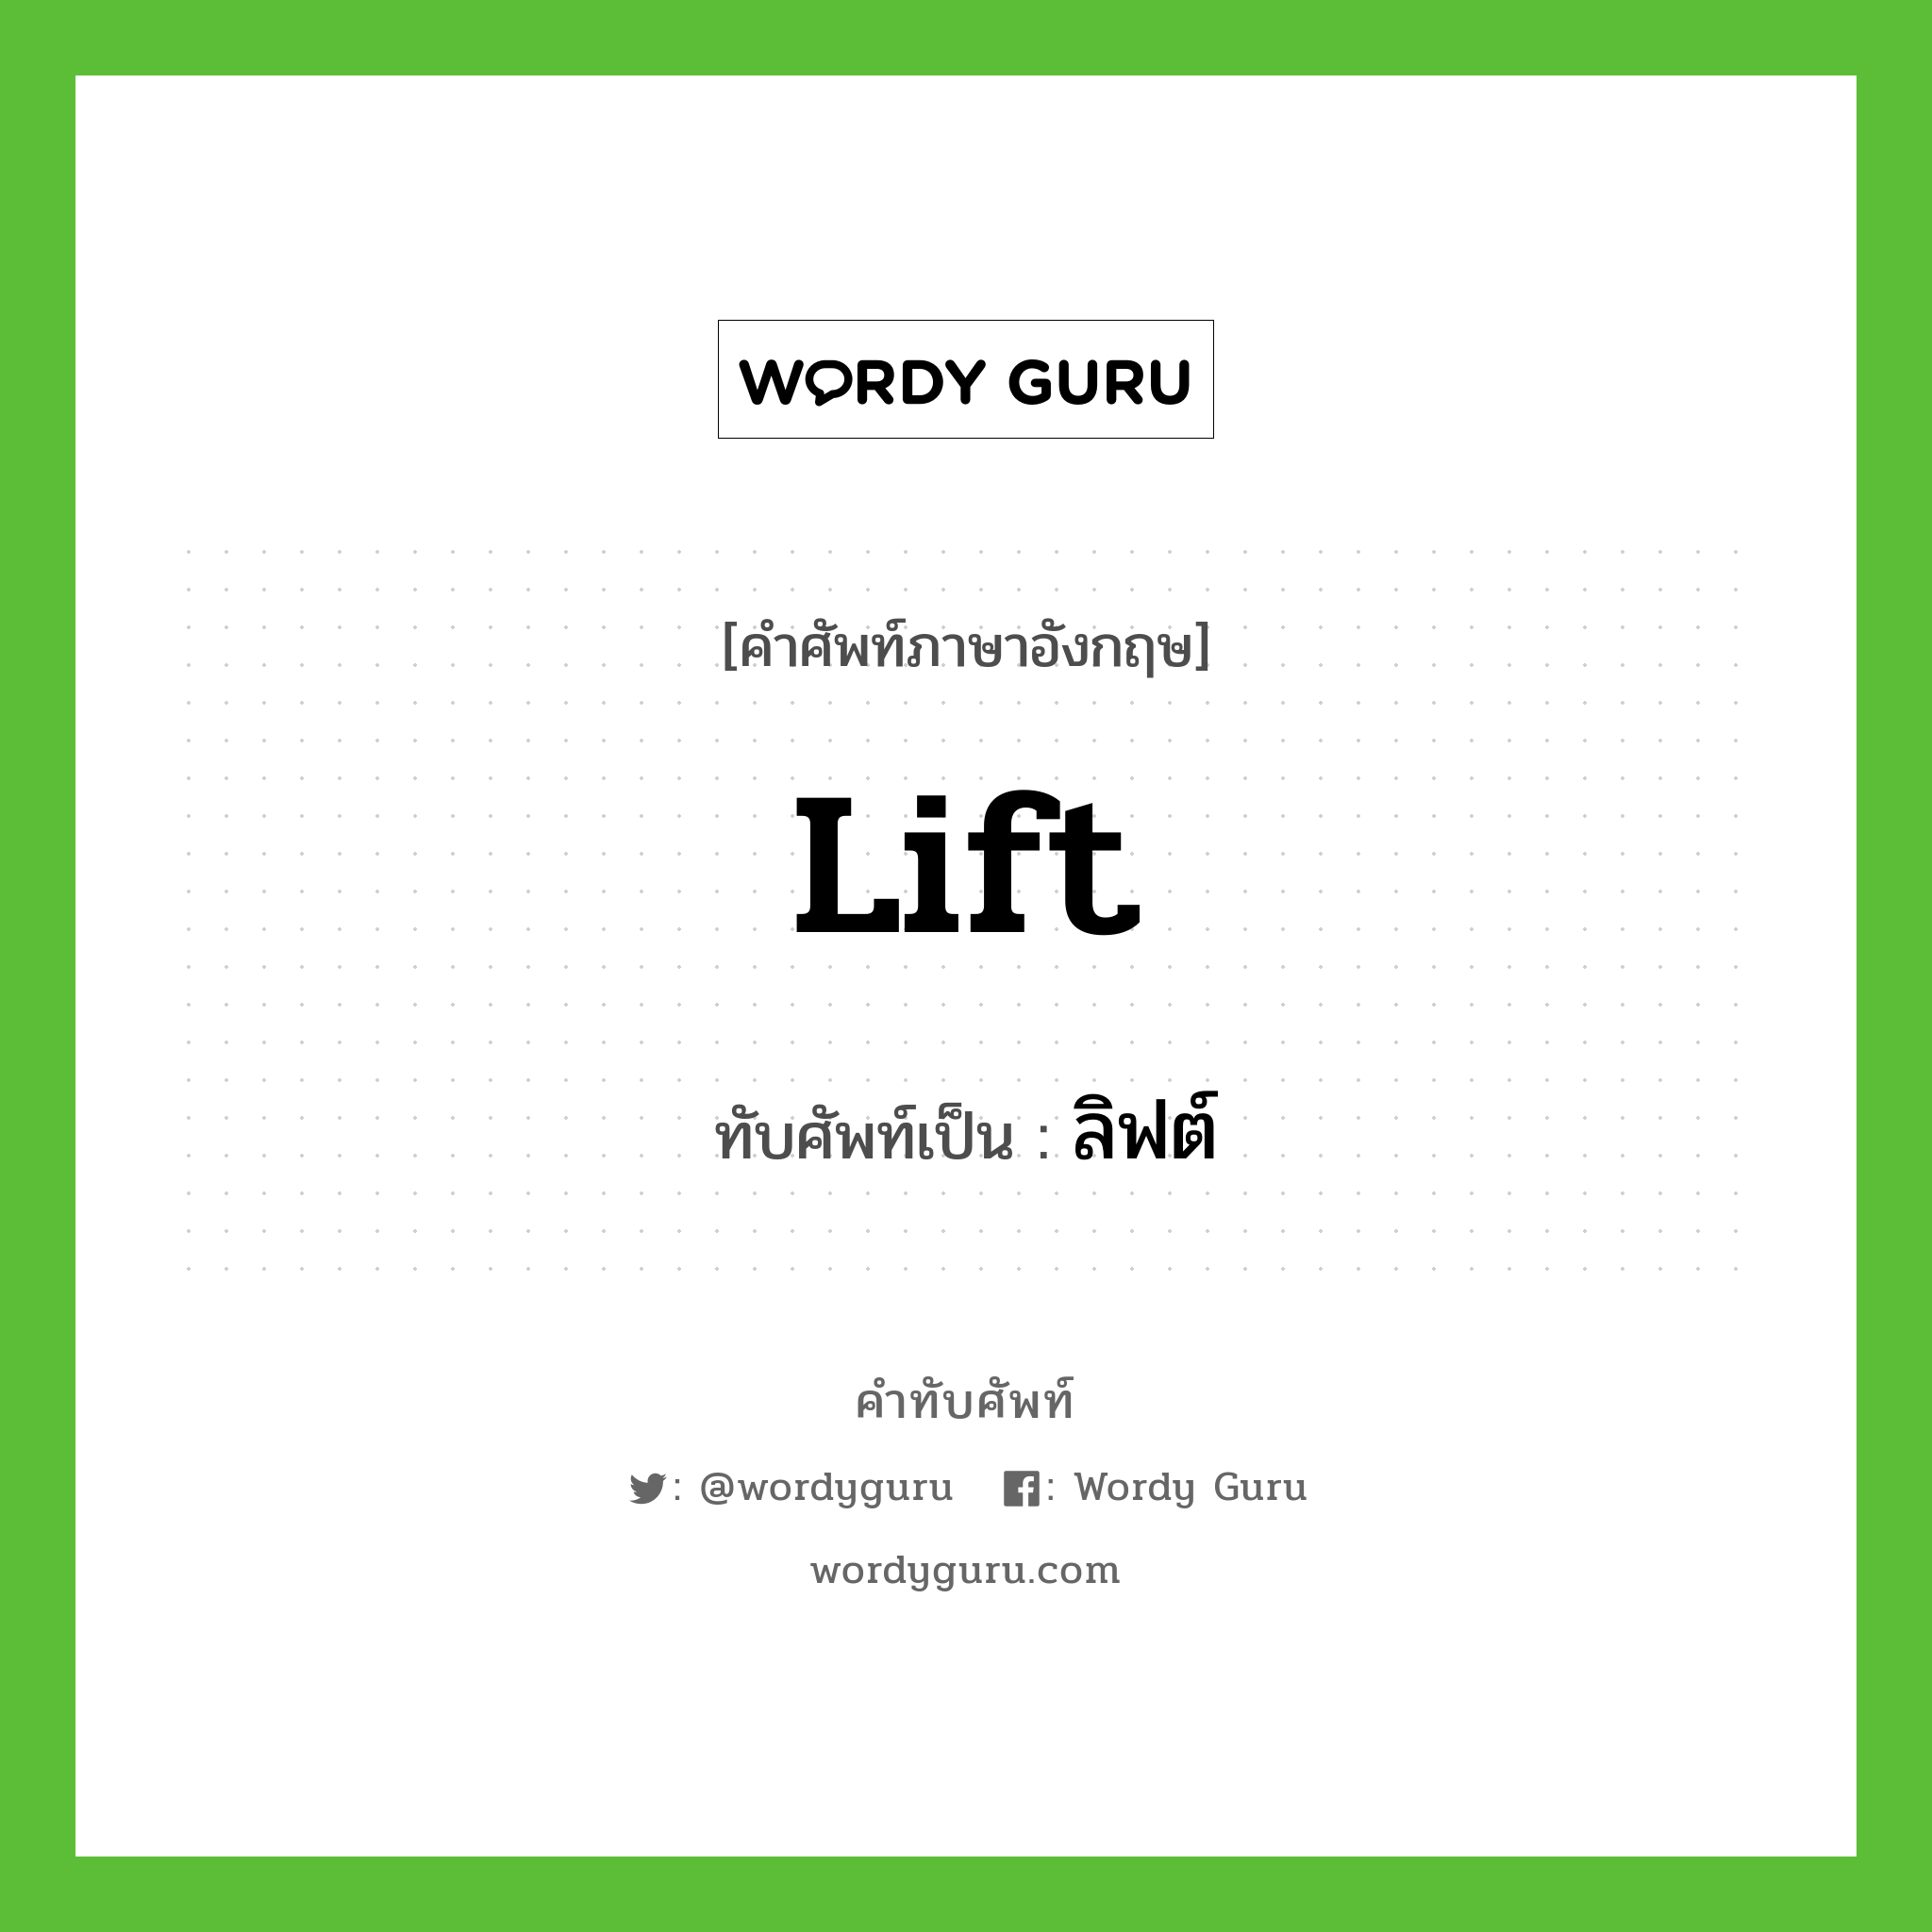 lift เขียนเป็นคำไทยว่าอะไร?, คำศัพท์ภาษาอังกฤษ lift ทับศัพท์เป็น ลิฟต์